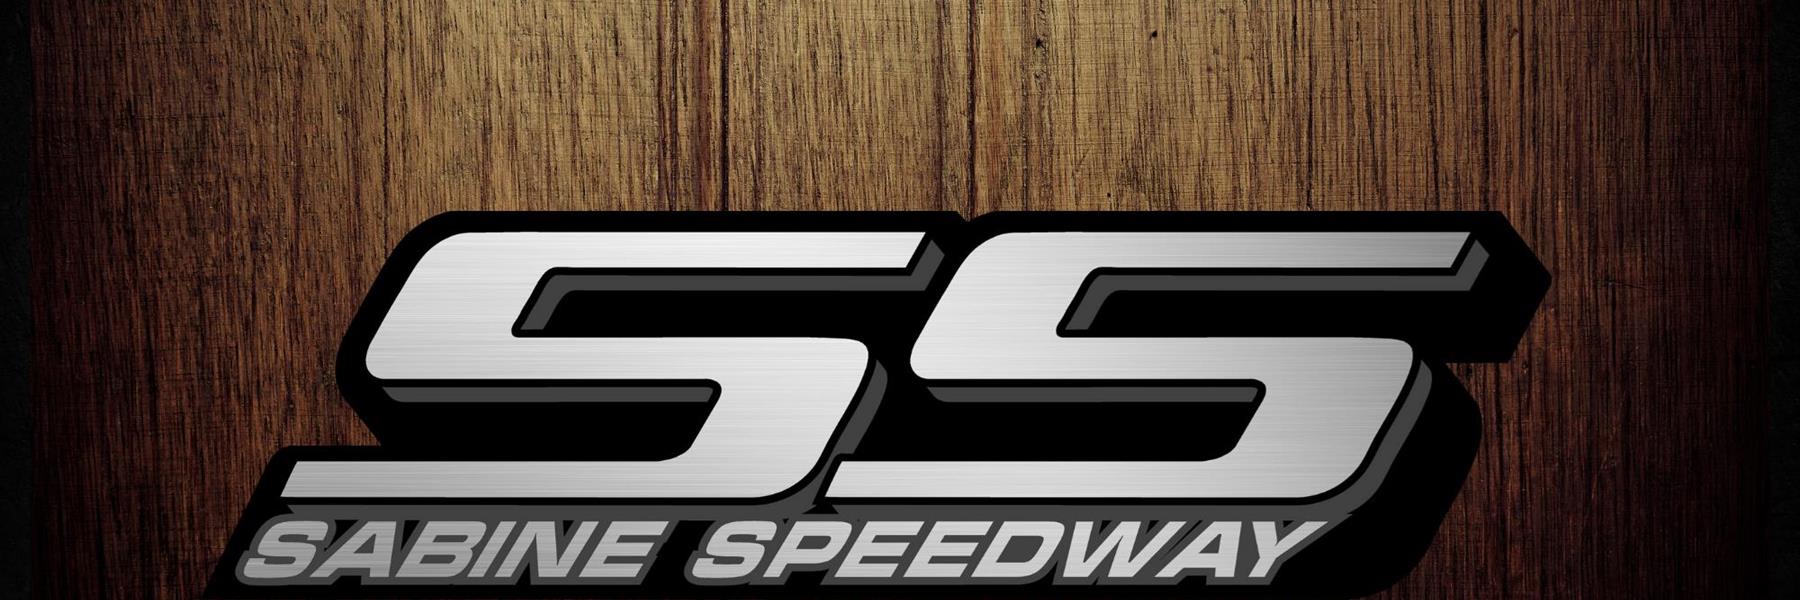 3/11/2022 - Sabine Speedway